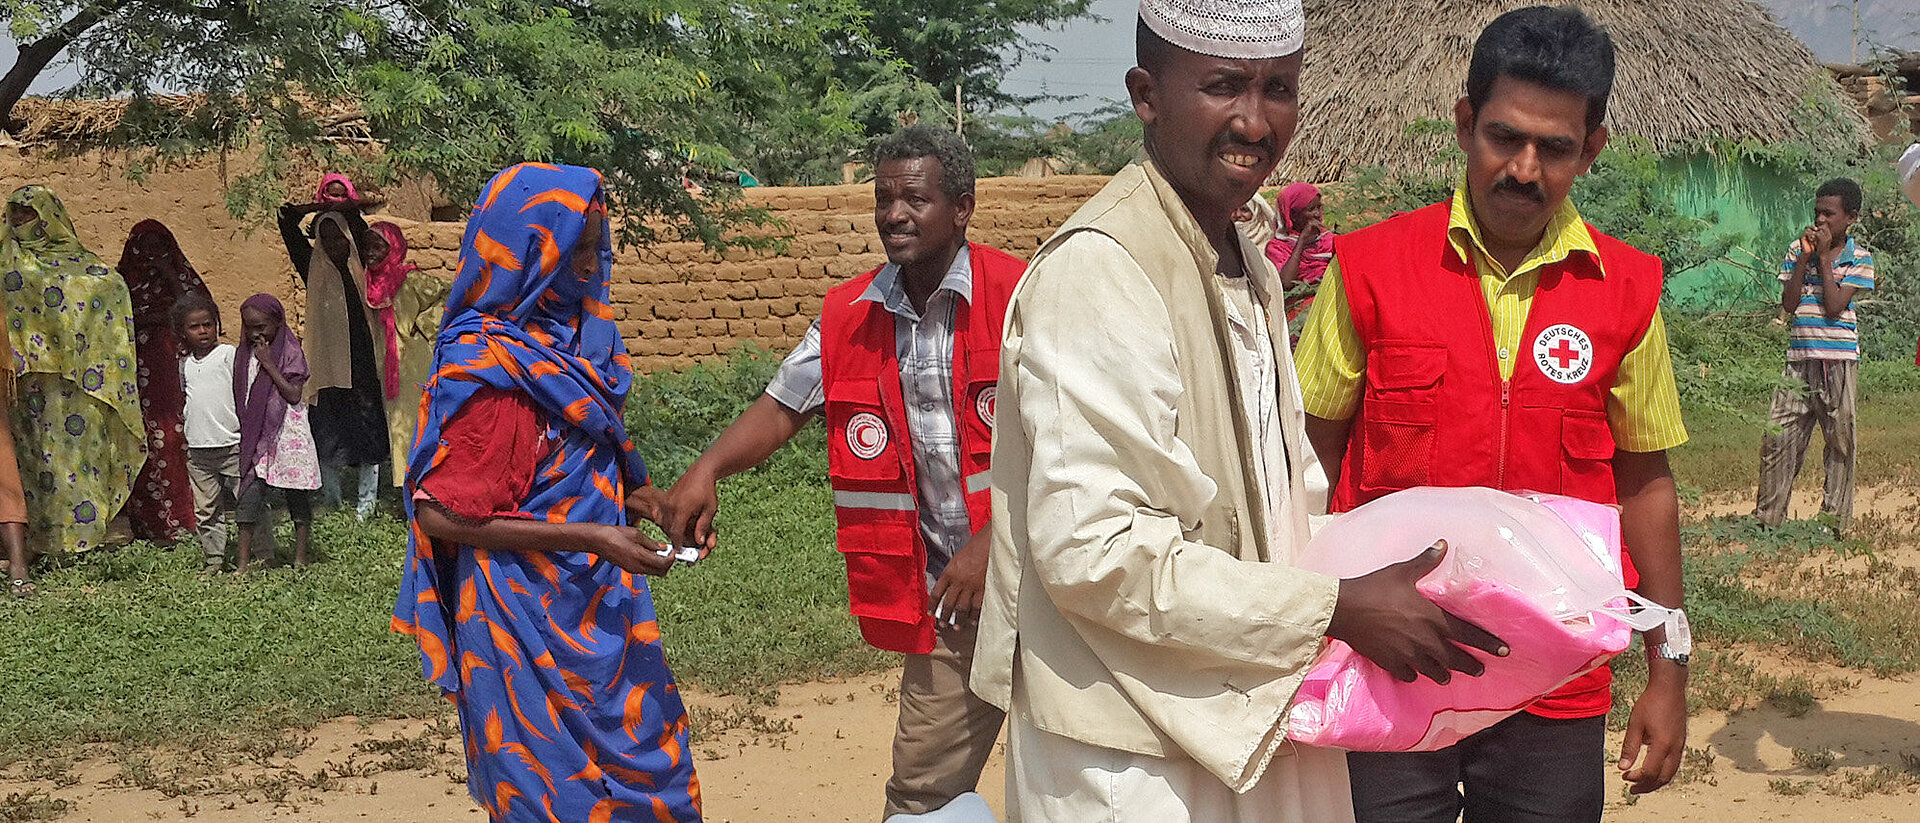 Mann erhält Hilfsgüter von DRK-Mitarbeiter im Sudan 